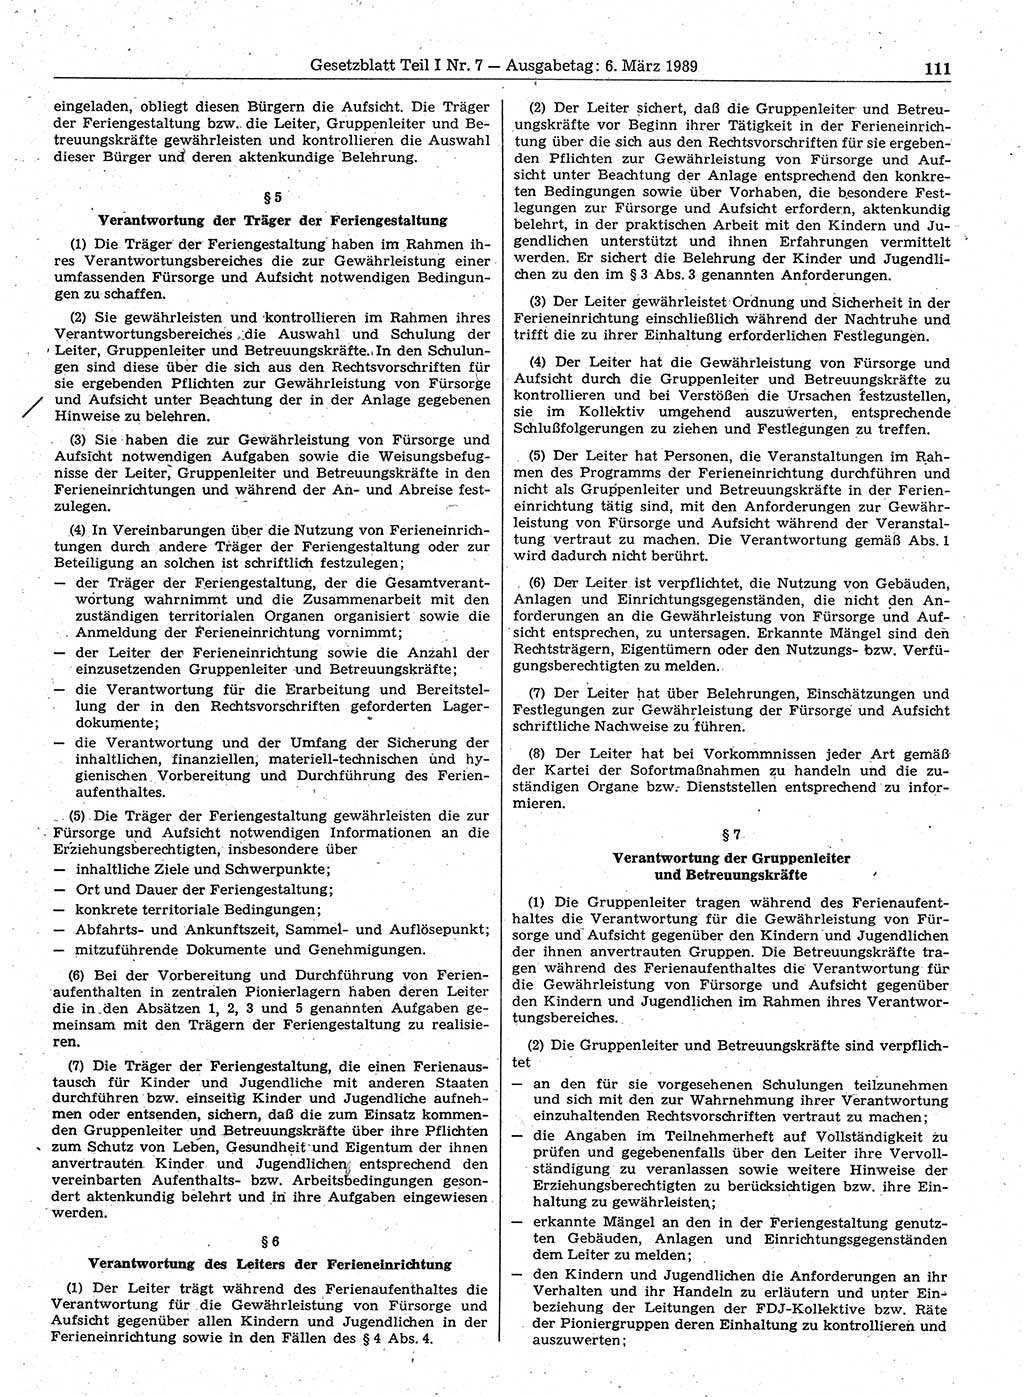 Gesetzblatt (GBl.) der Deutschen Demokratischen Republik (DDR) Teil Ⅰ 1989, Seite 111 (GBl. DDR Ⅰ 1989, S. 111)